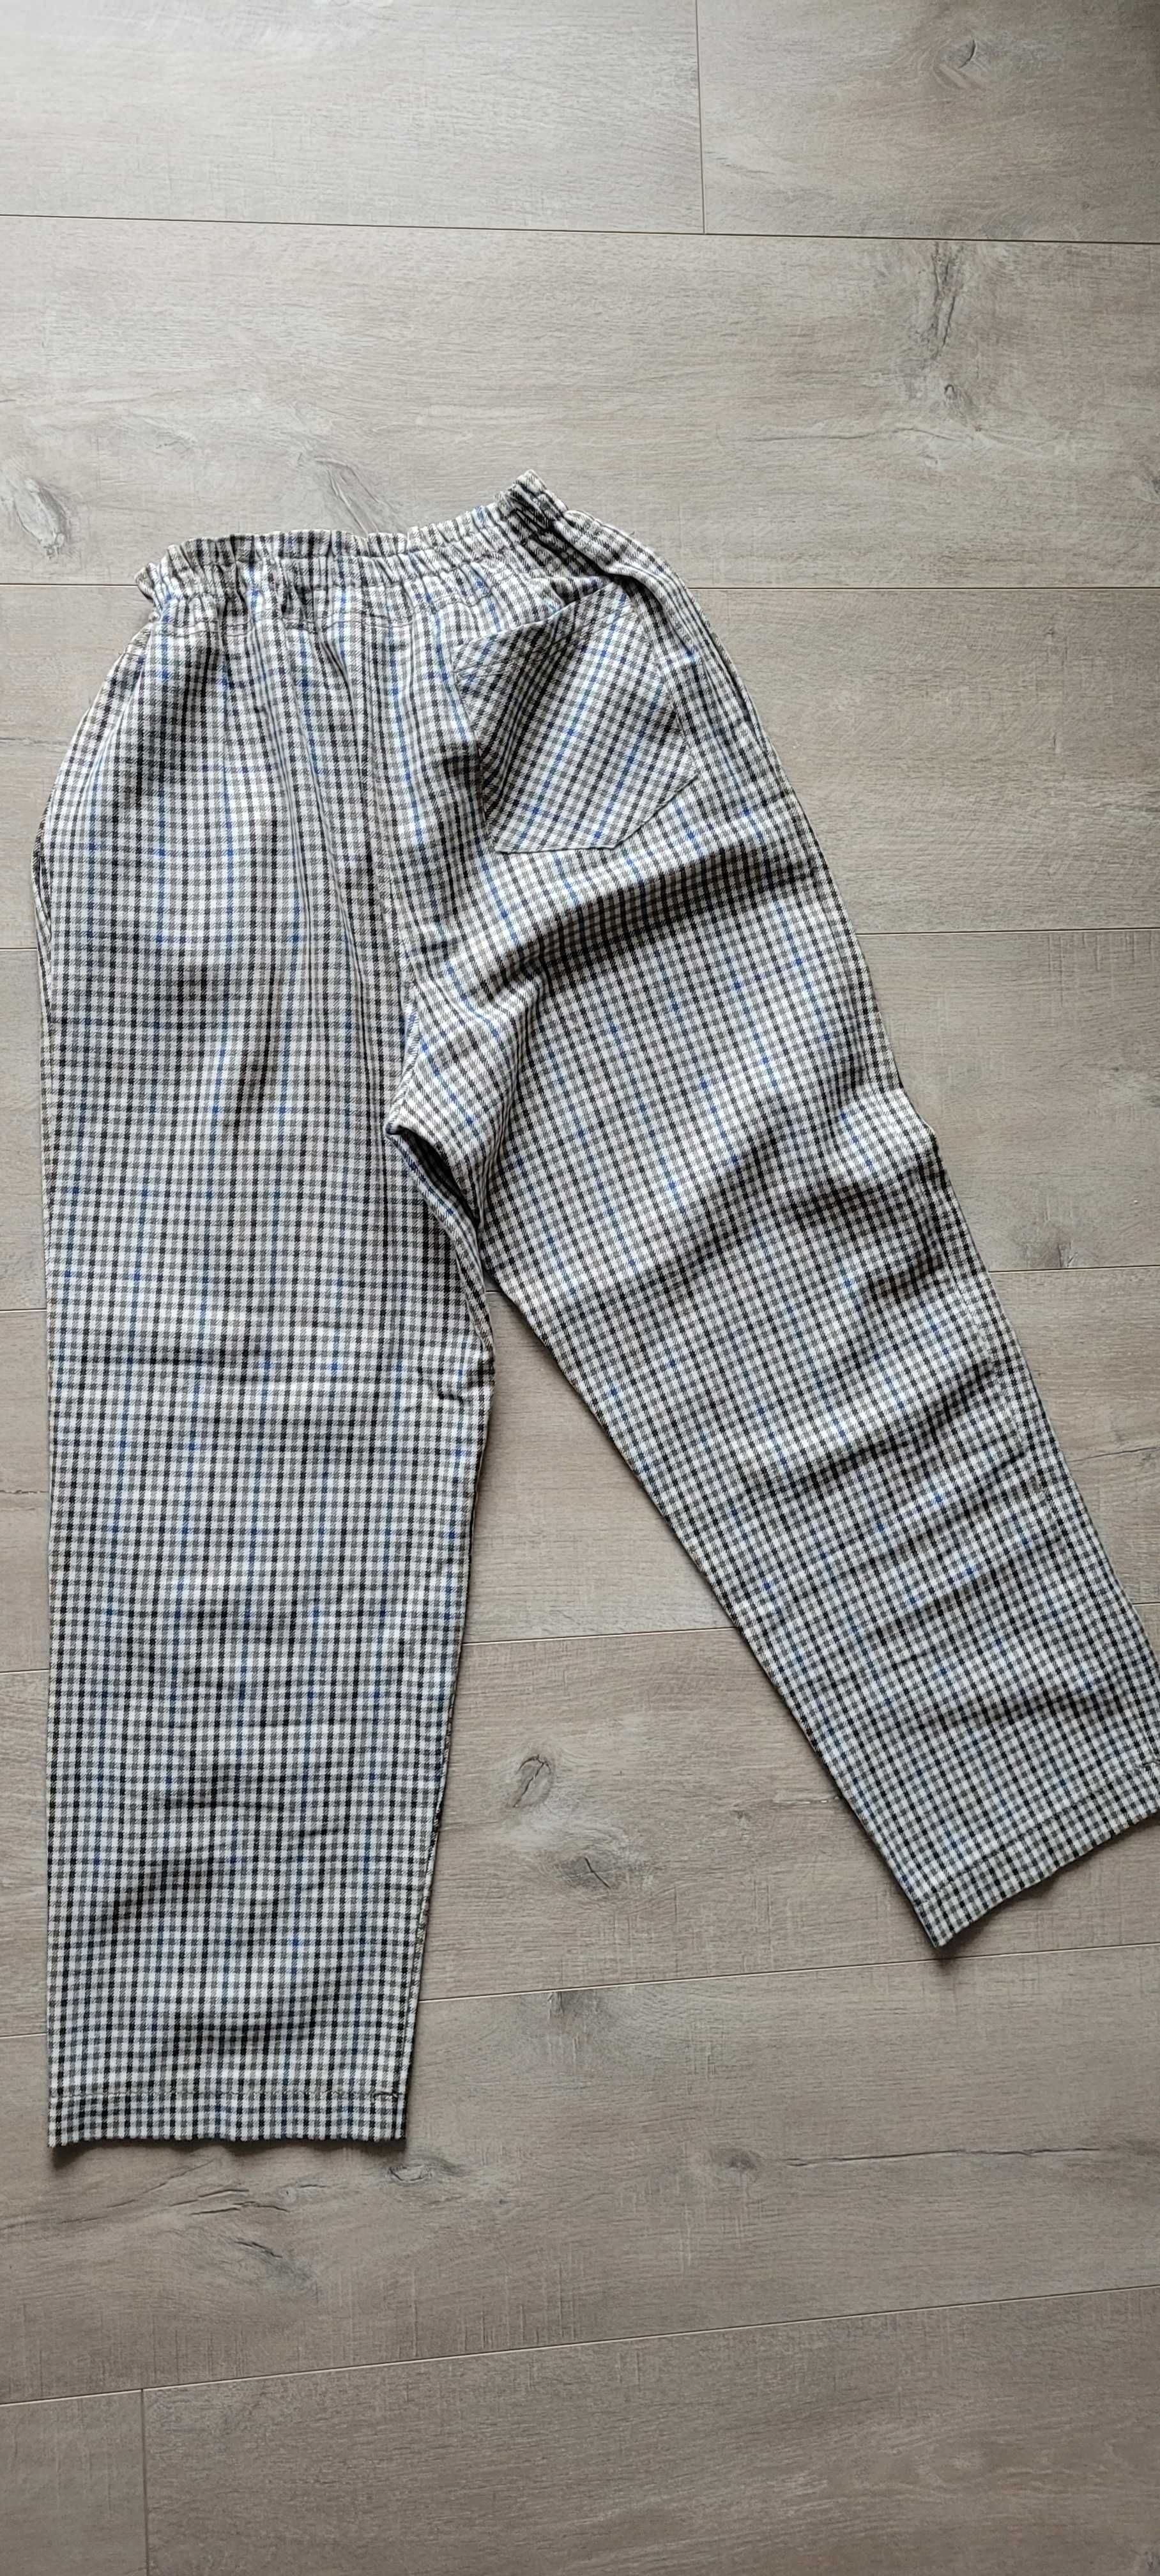 Spodnie z materiału w kratę Zara rozmiar 164